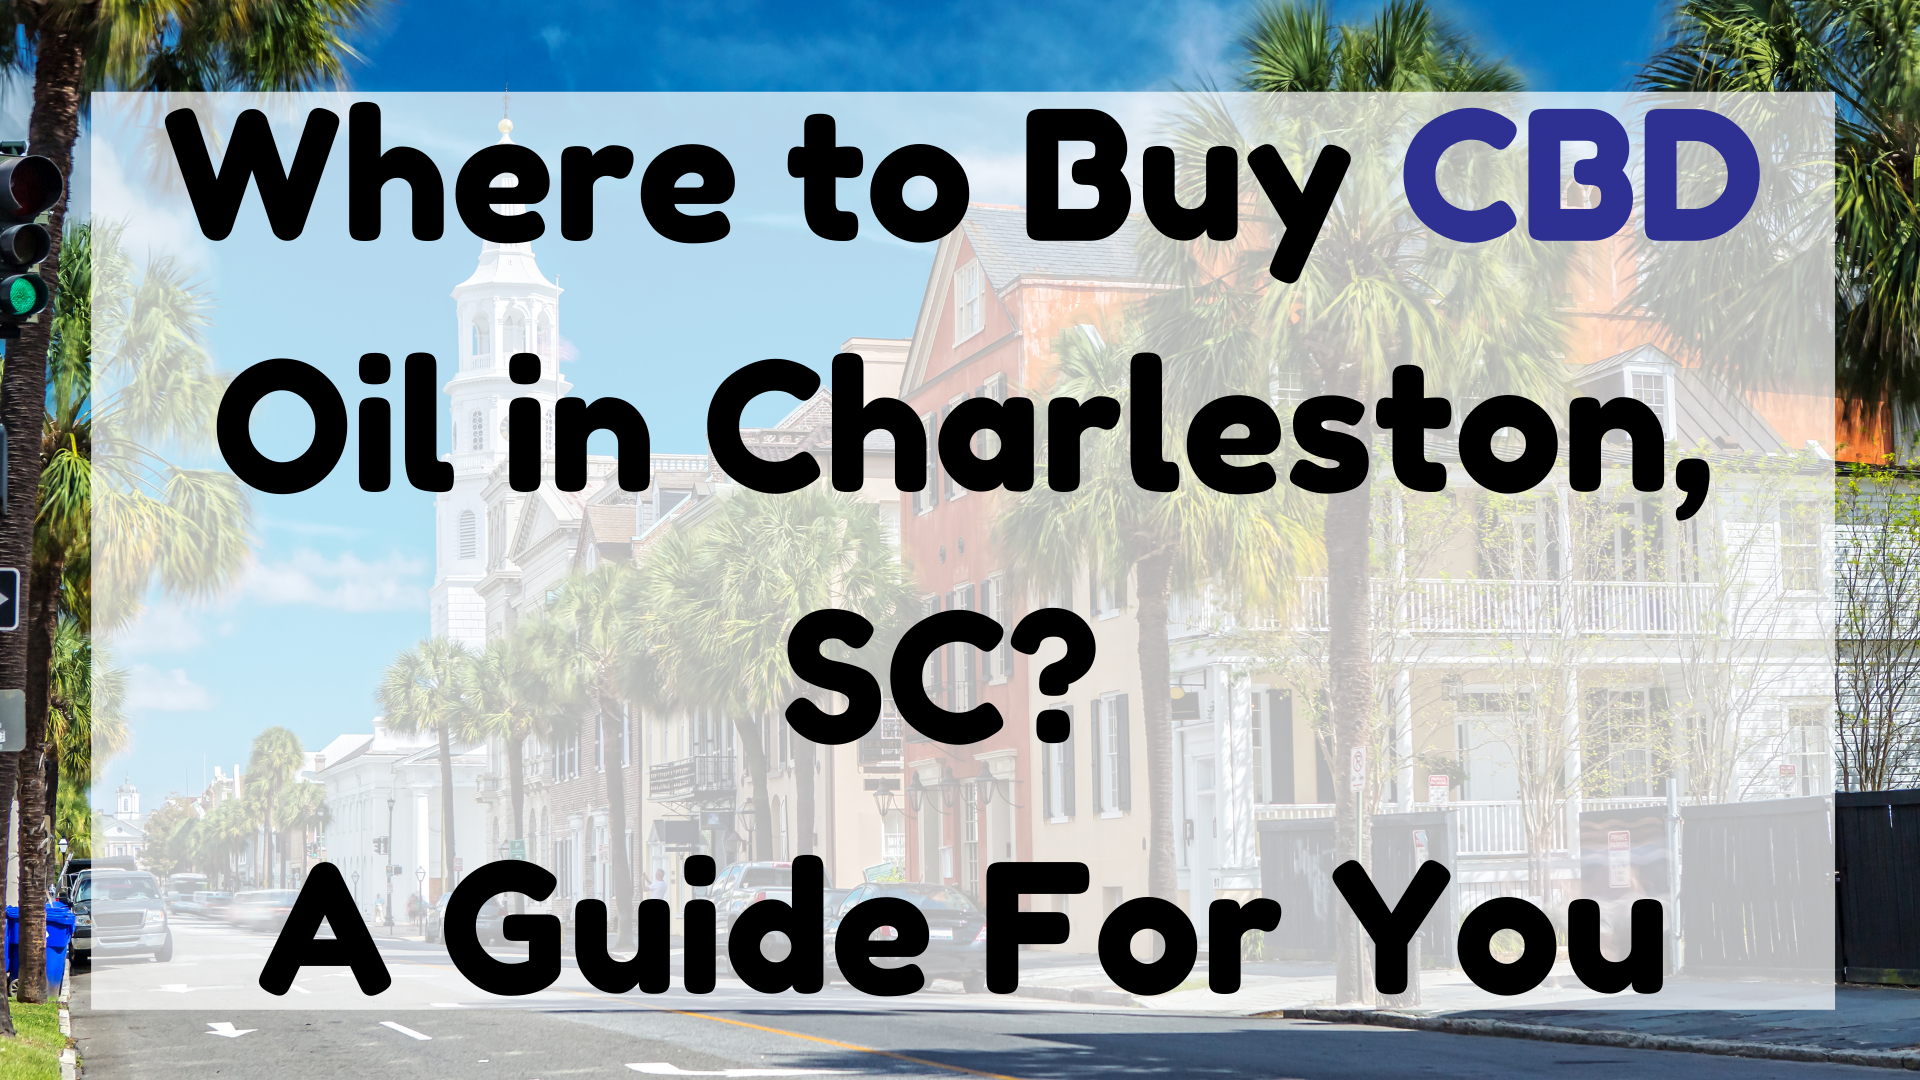 Where to Buy CBD Oil in Charleston, SC